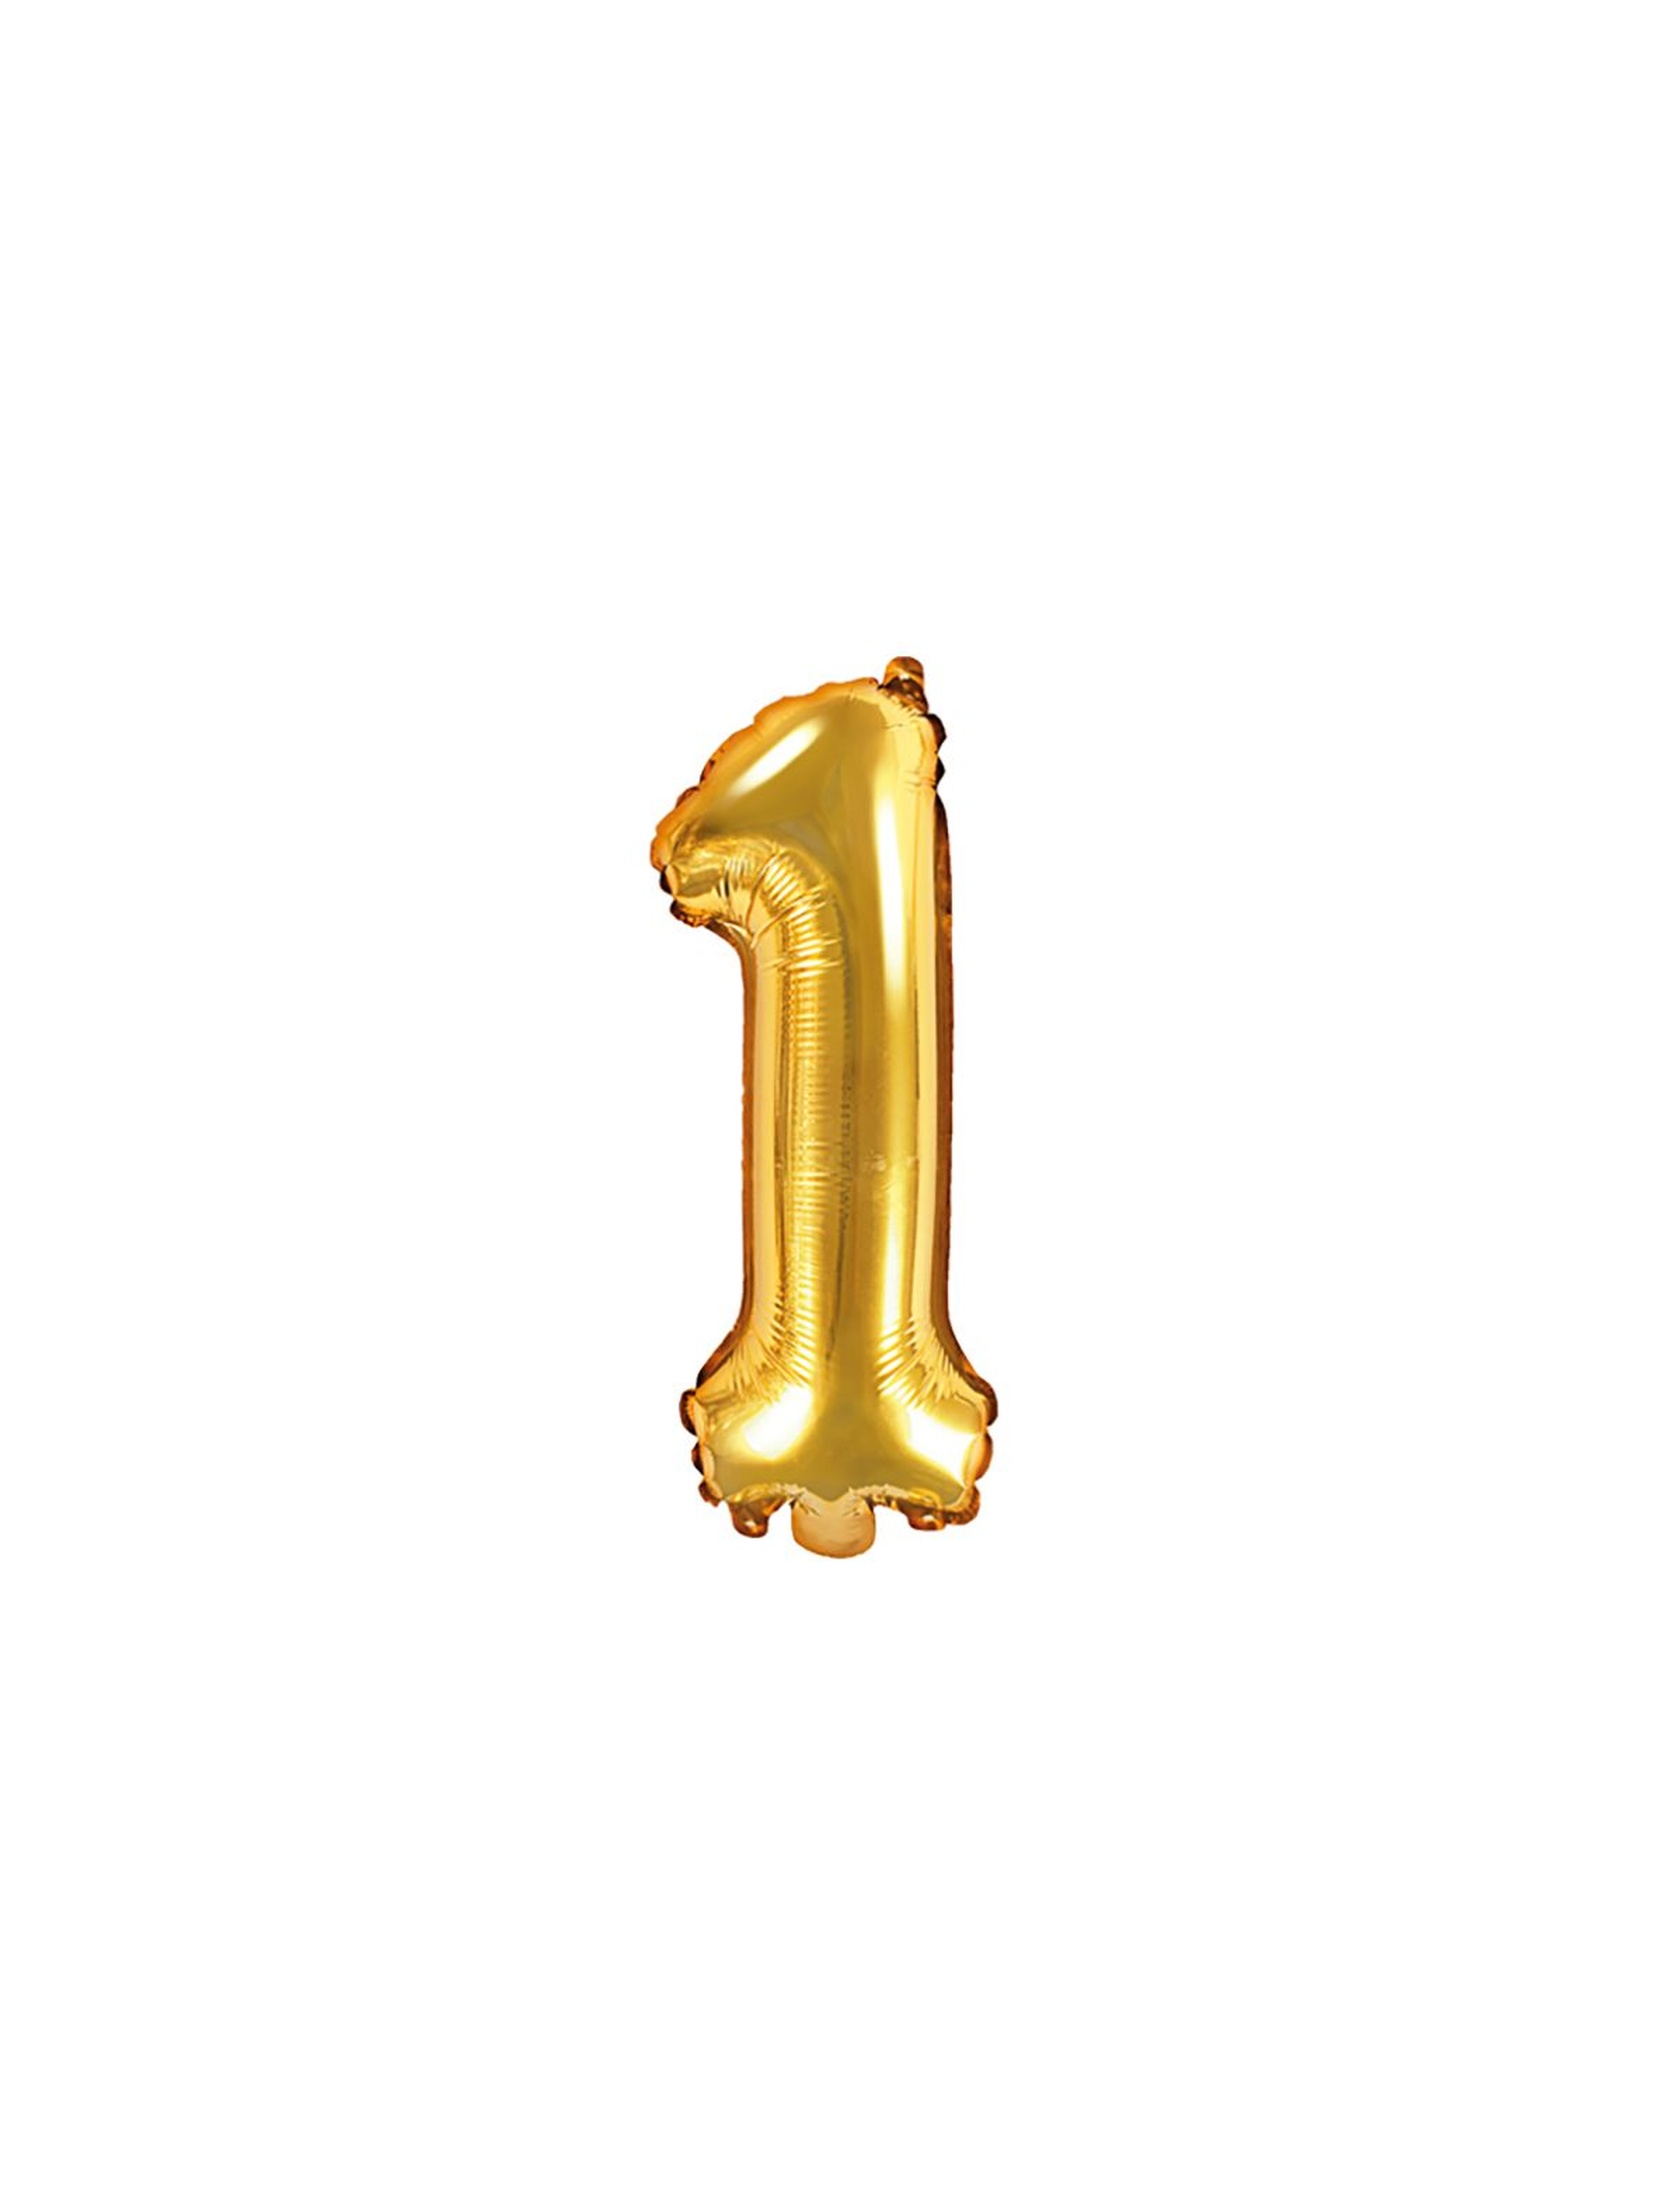 Balon foliowy - Cyfra "1" w kolorze złotym